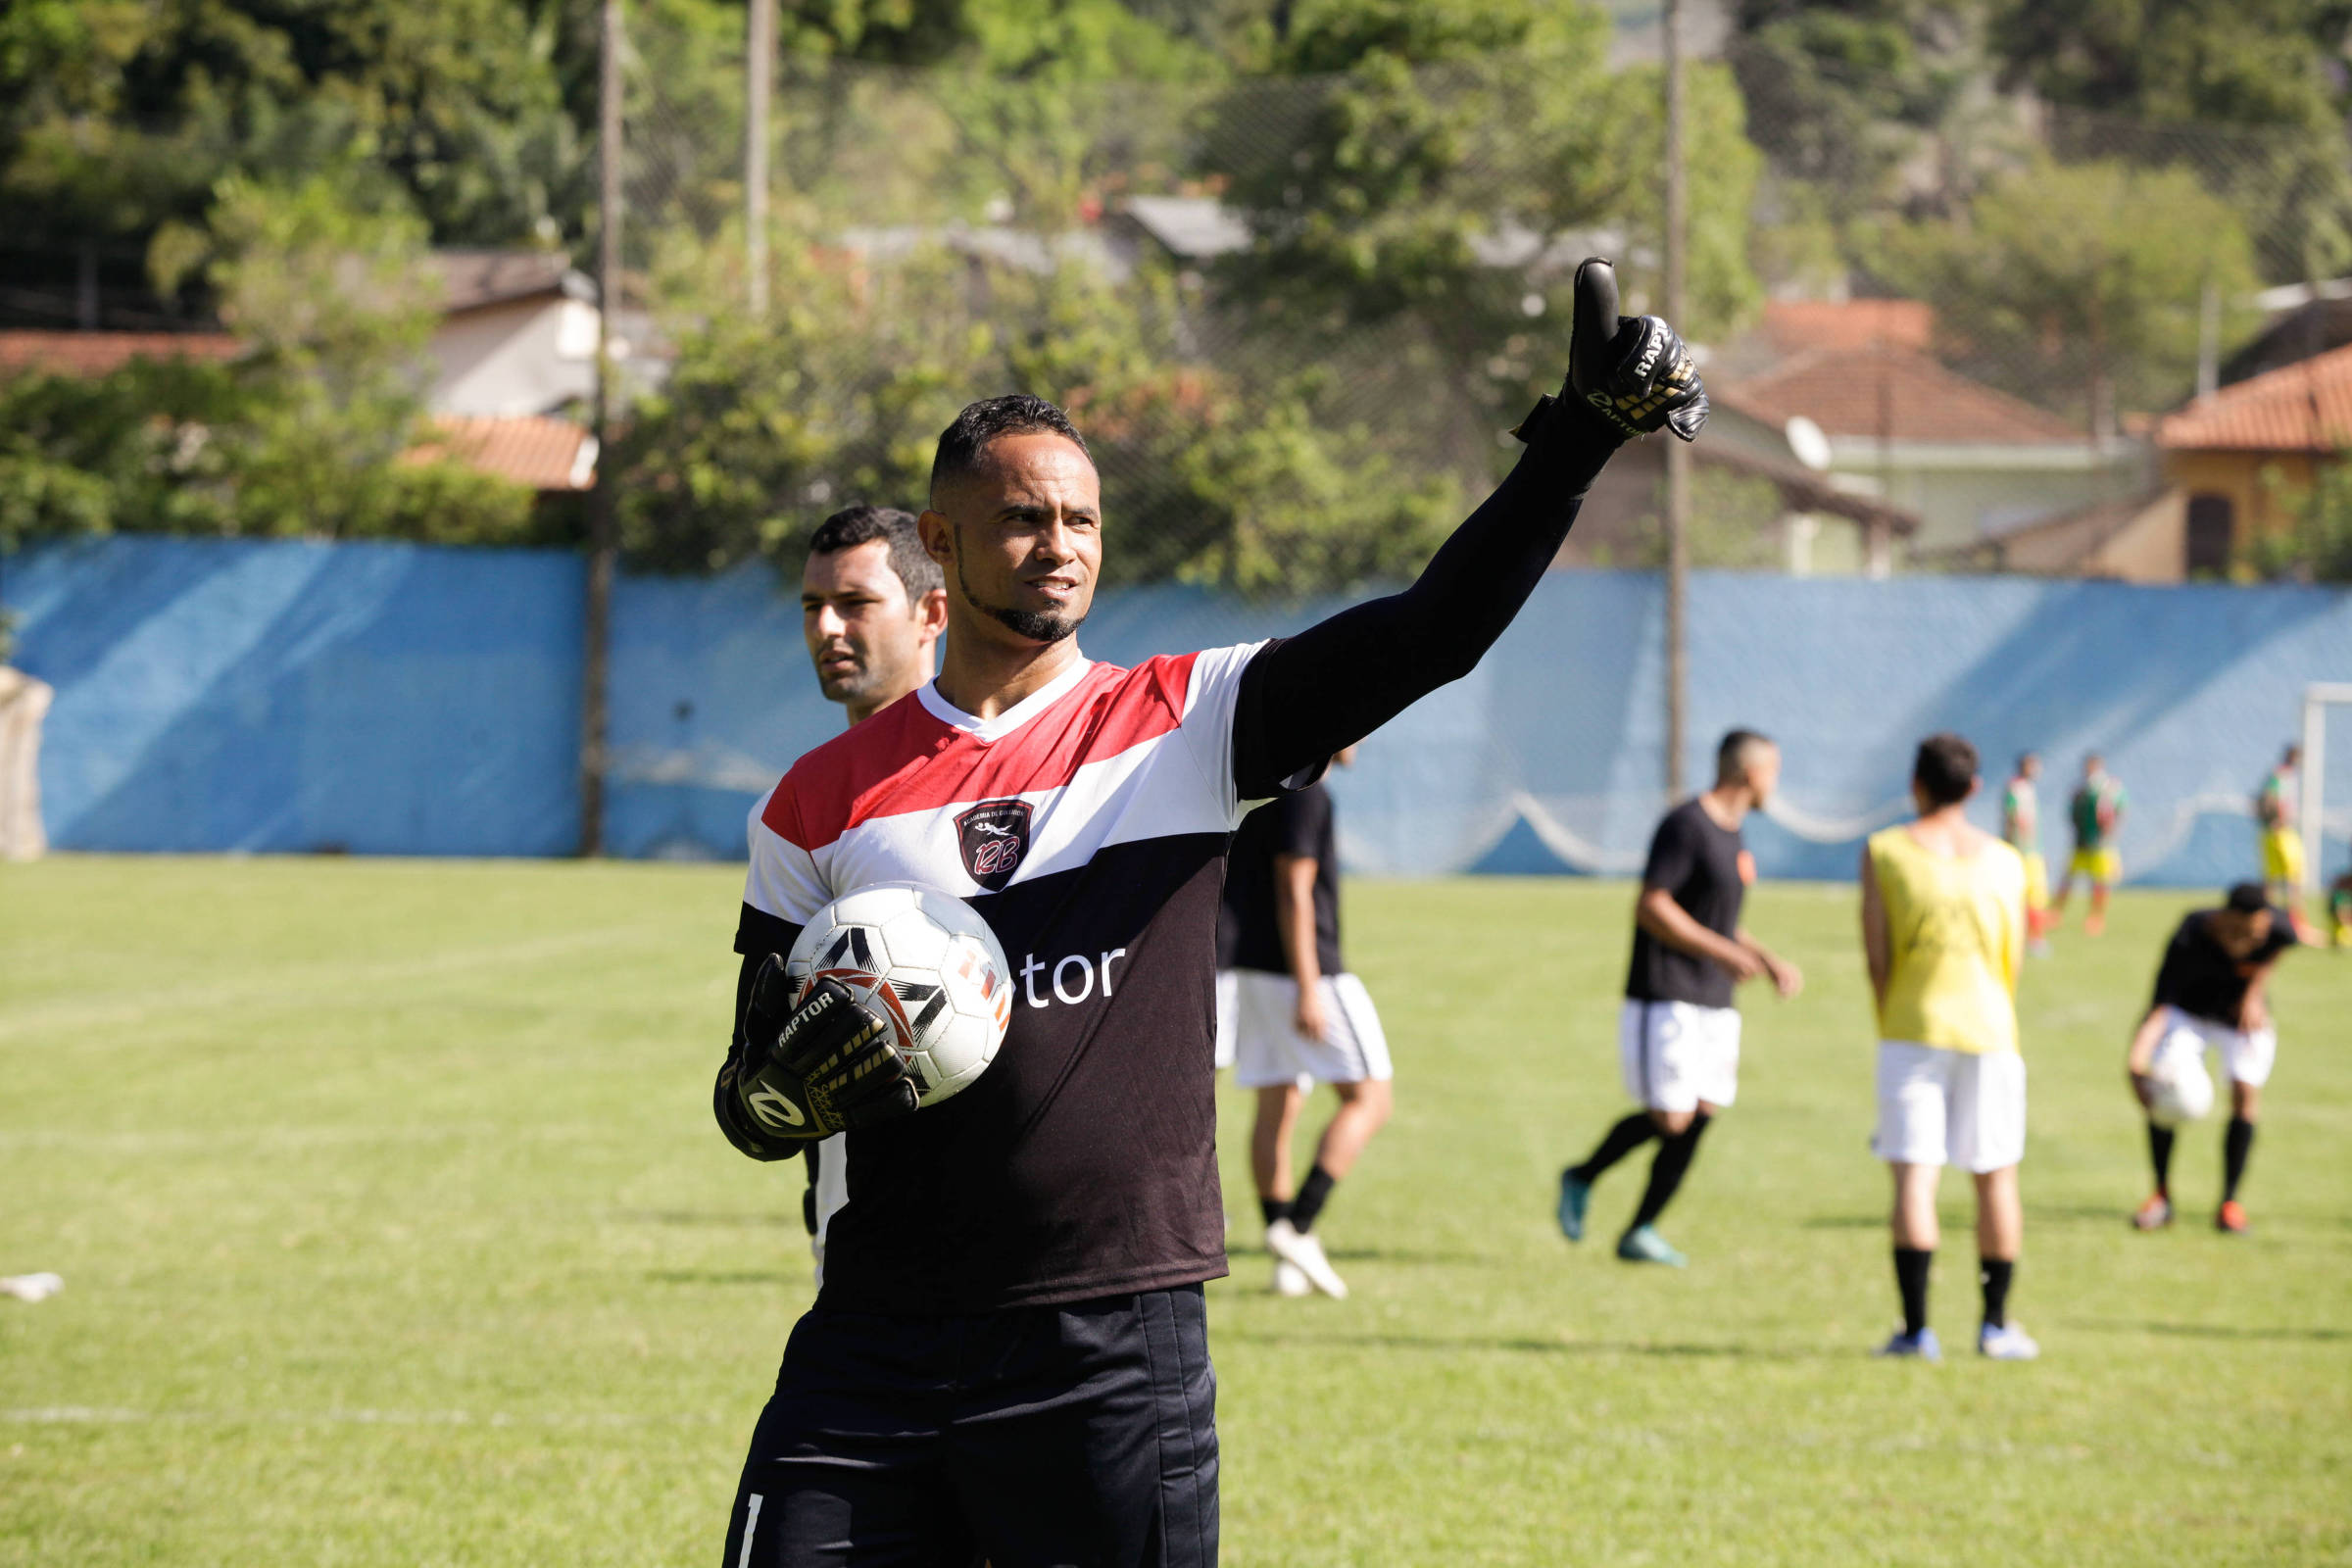 Fluminense de Feira contrata goleiro de 22 anos para reforçar time